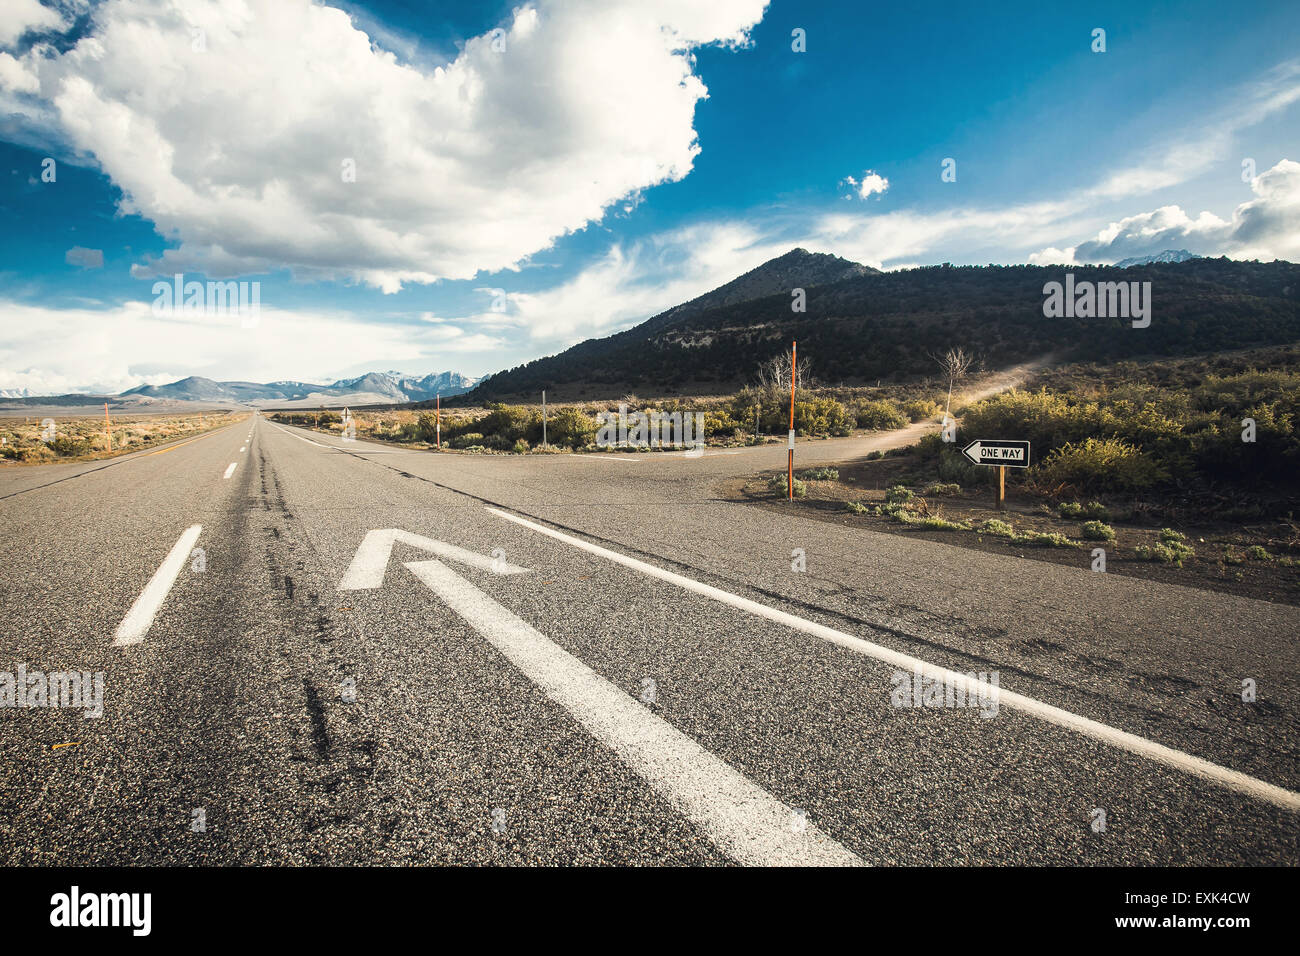 Weitwinkel-Bild des Fahrens auf einer leeren Straße durch die wunderschöne Landschaft am sonnigen Tag. Konzept-Vision für das weitere Vorgehen Stockfoto